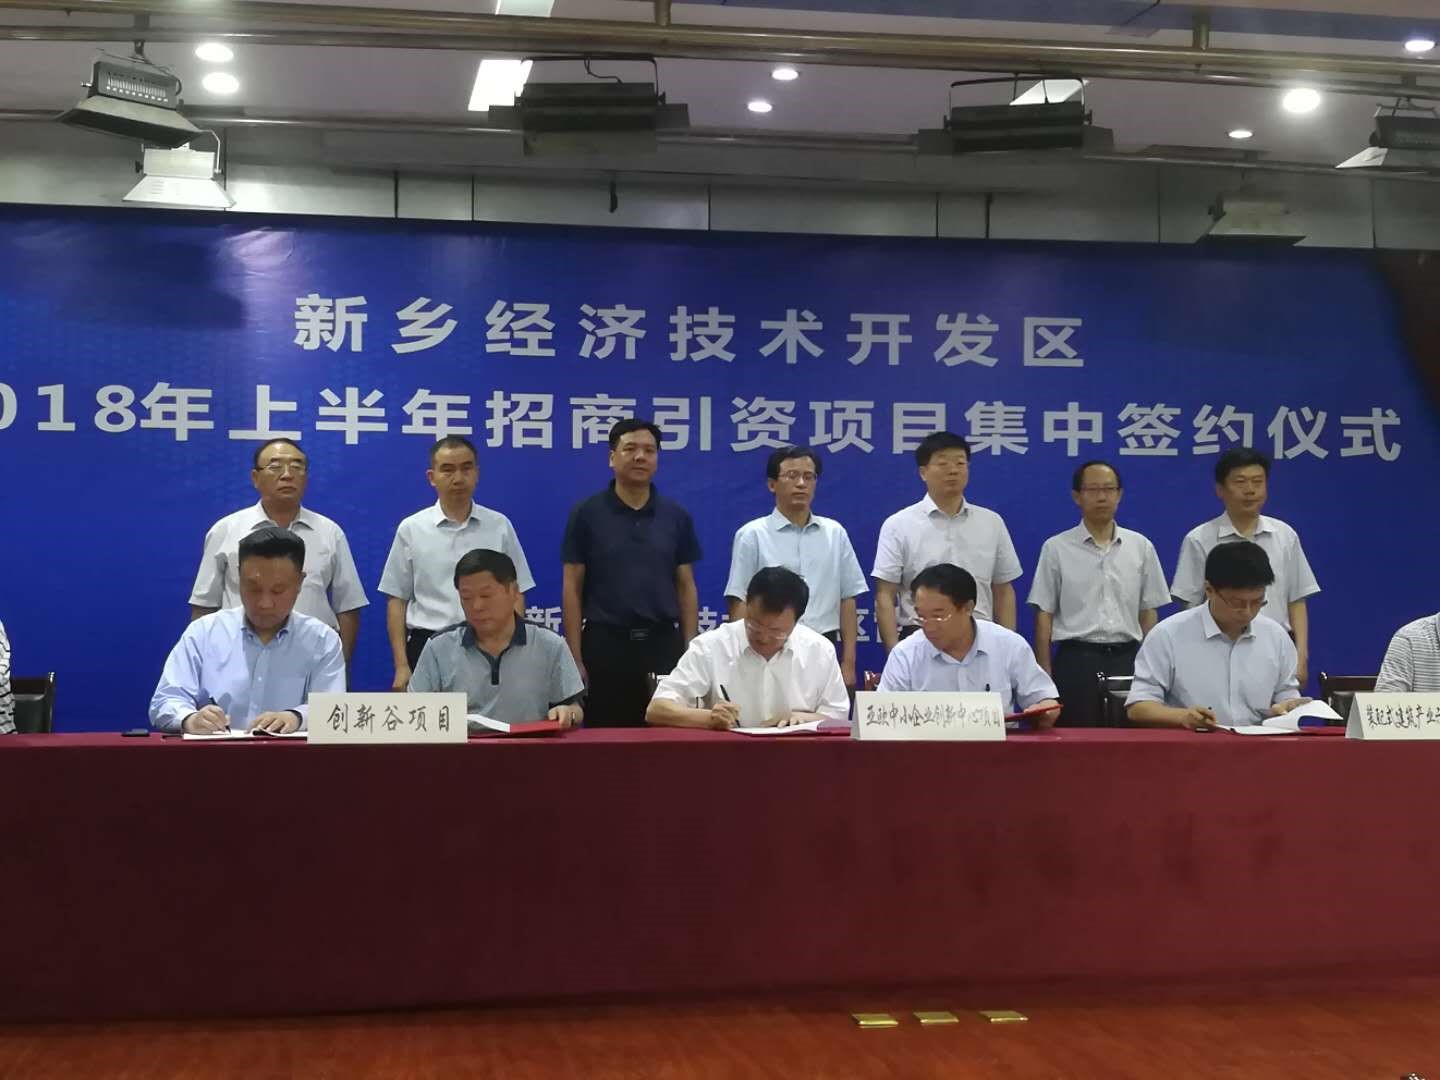 亚欧科技创新合作中心与河南新乡经济技术开发区签约合作-1